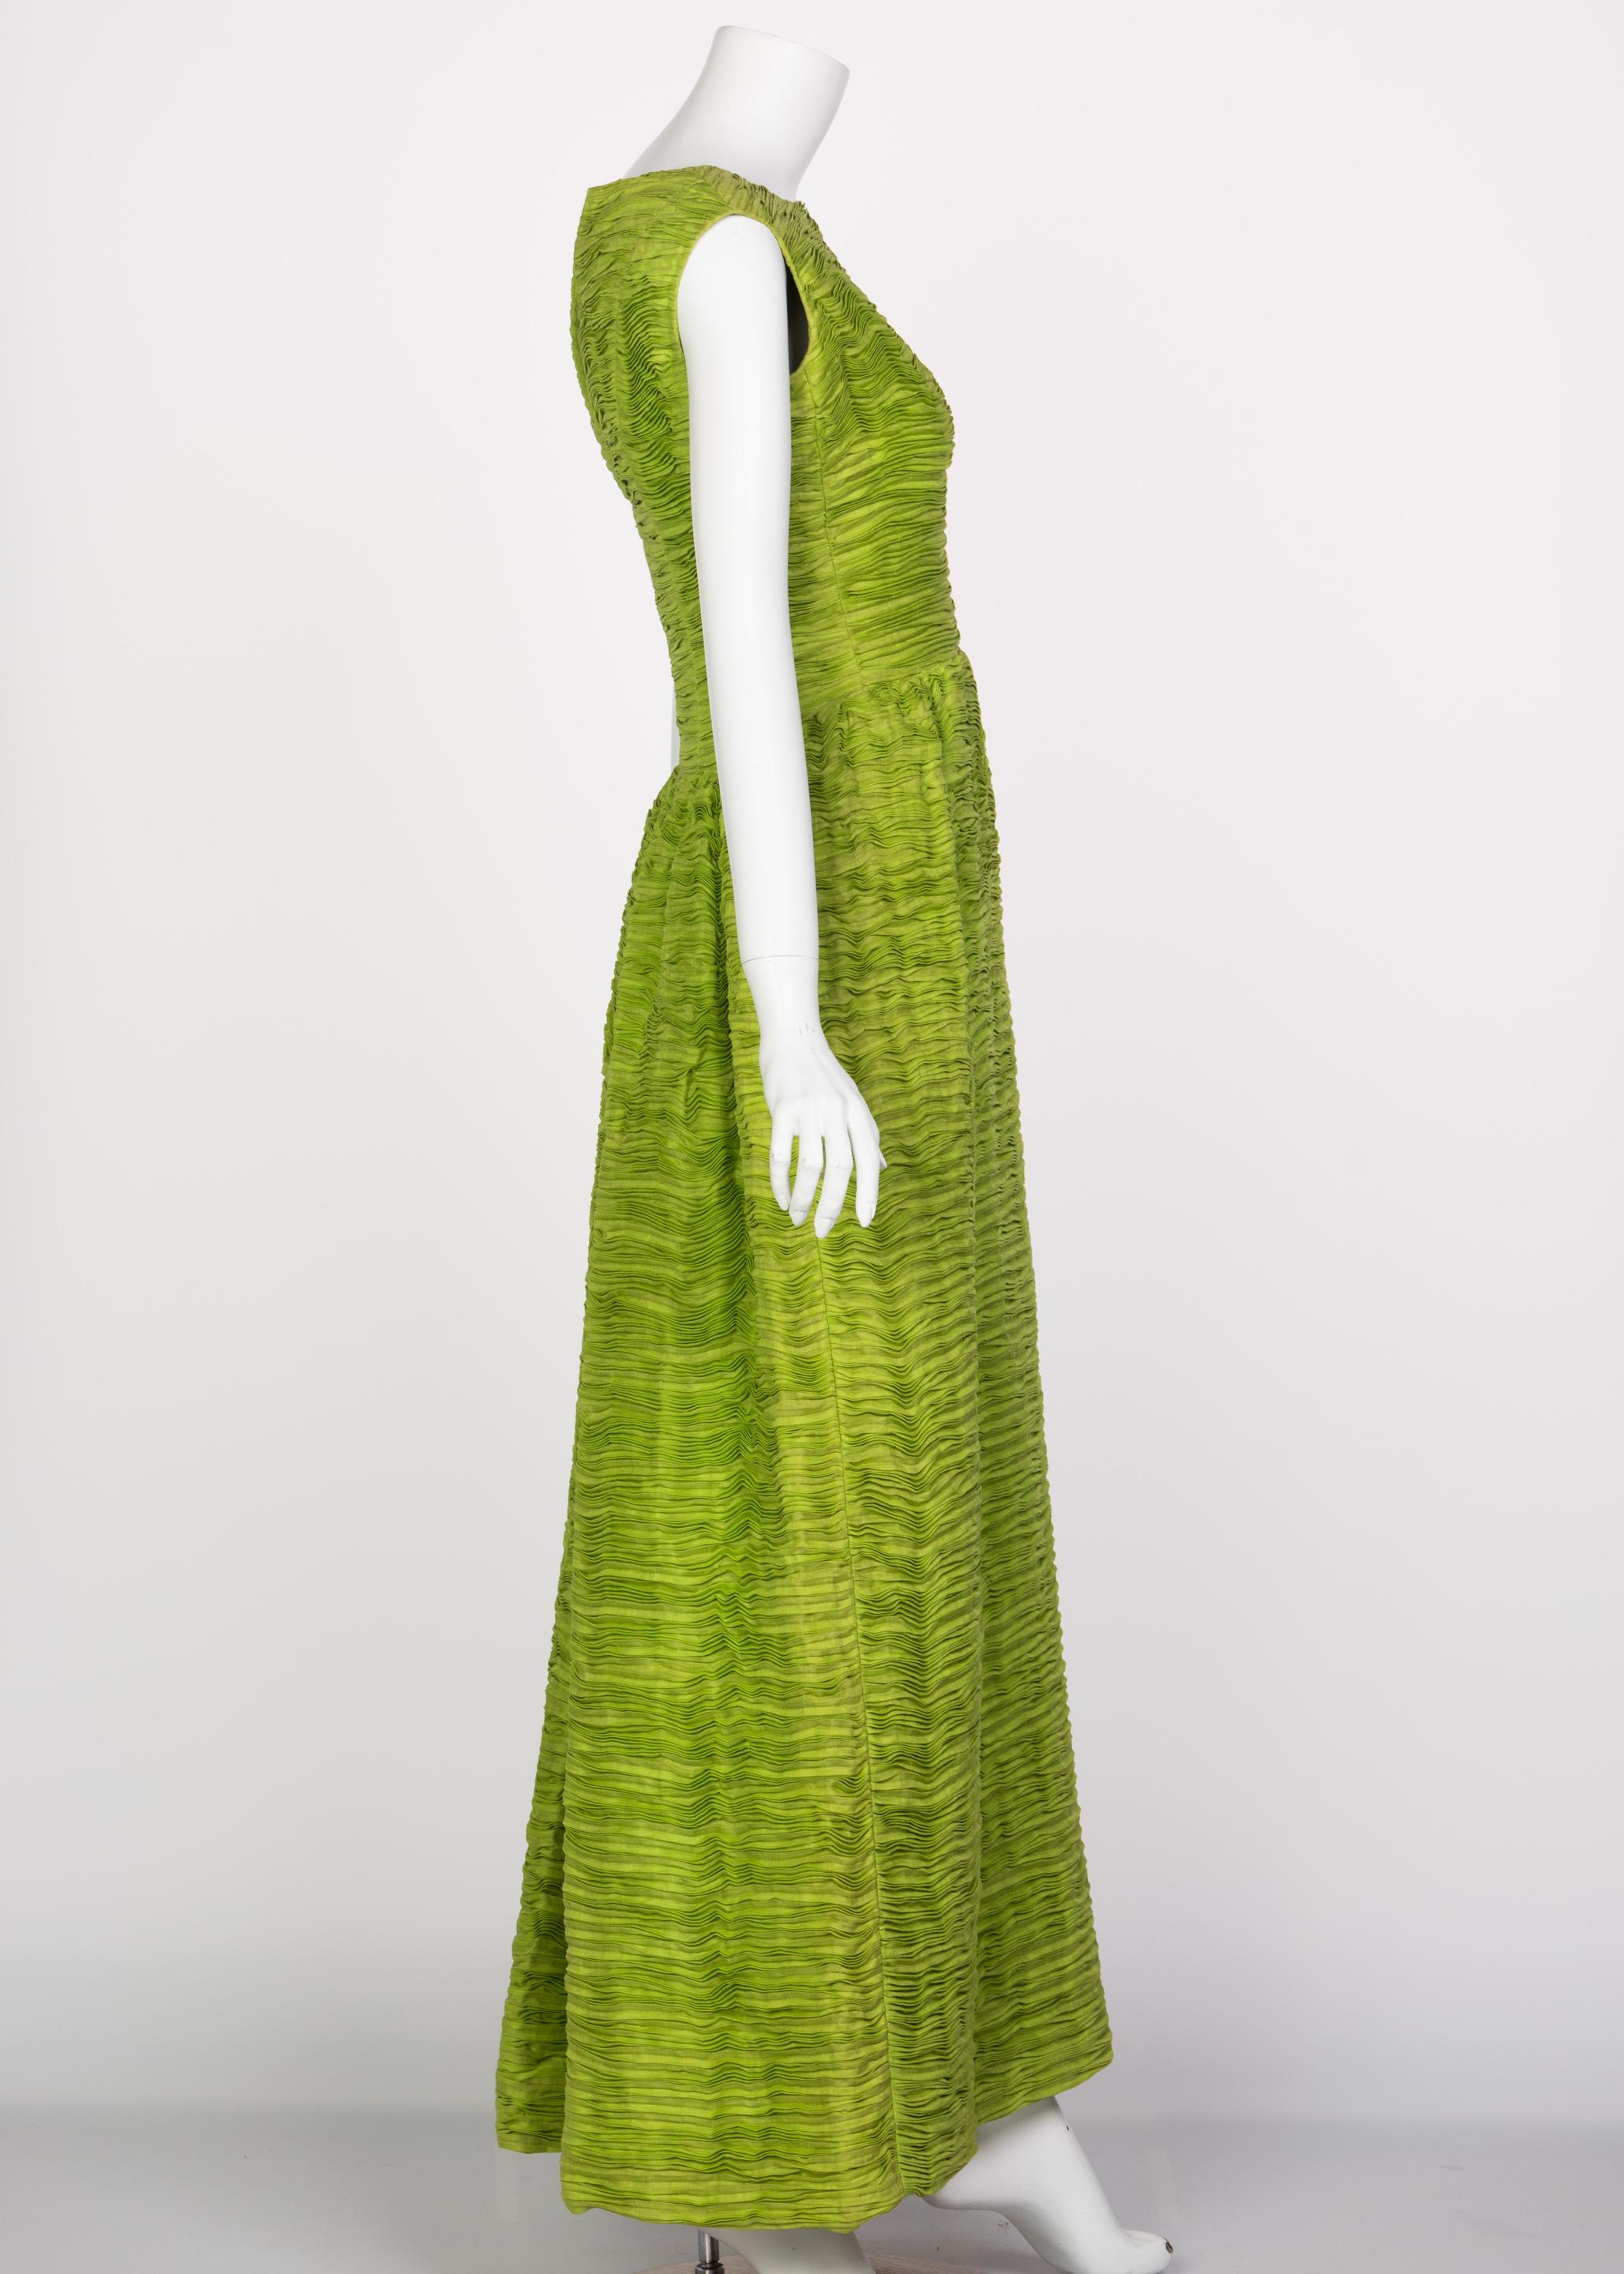 Vert Sybil Connolly Couture, robe en lin plissé vert, années 60 en vente